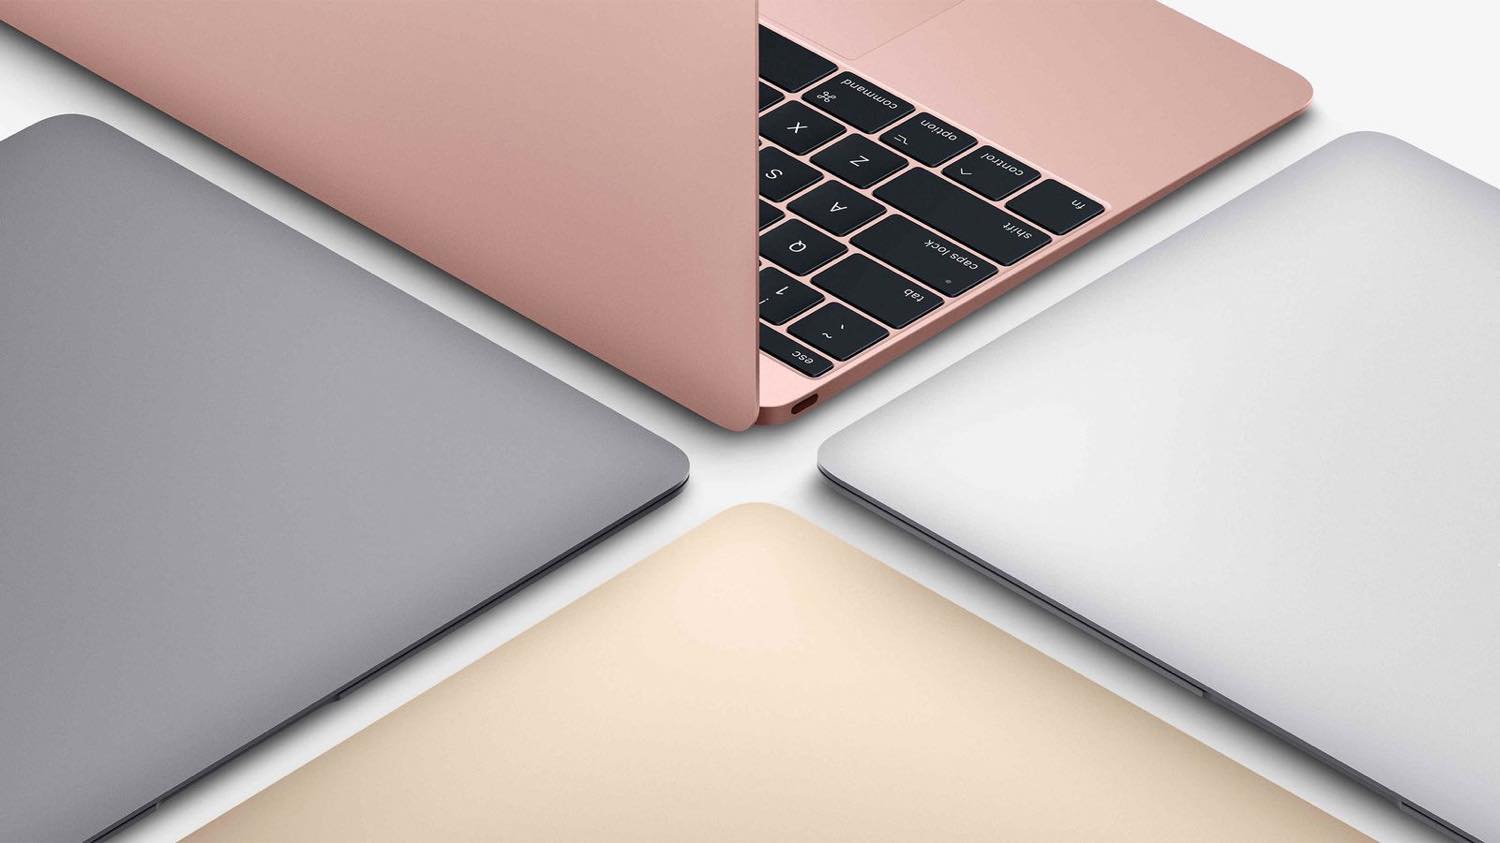 12インチ｢MacBook｣が復活するかもとの噂が再び